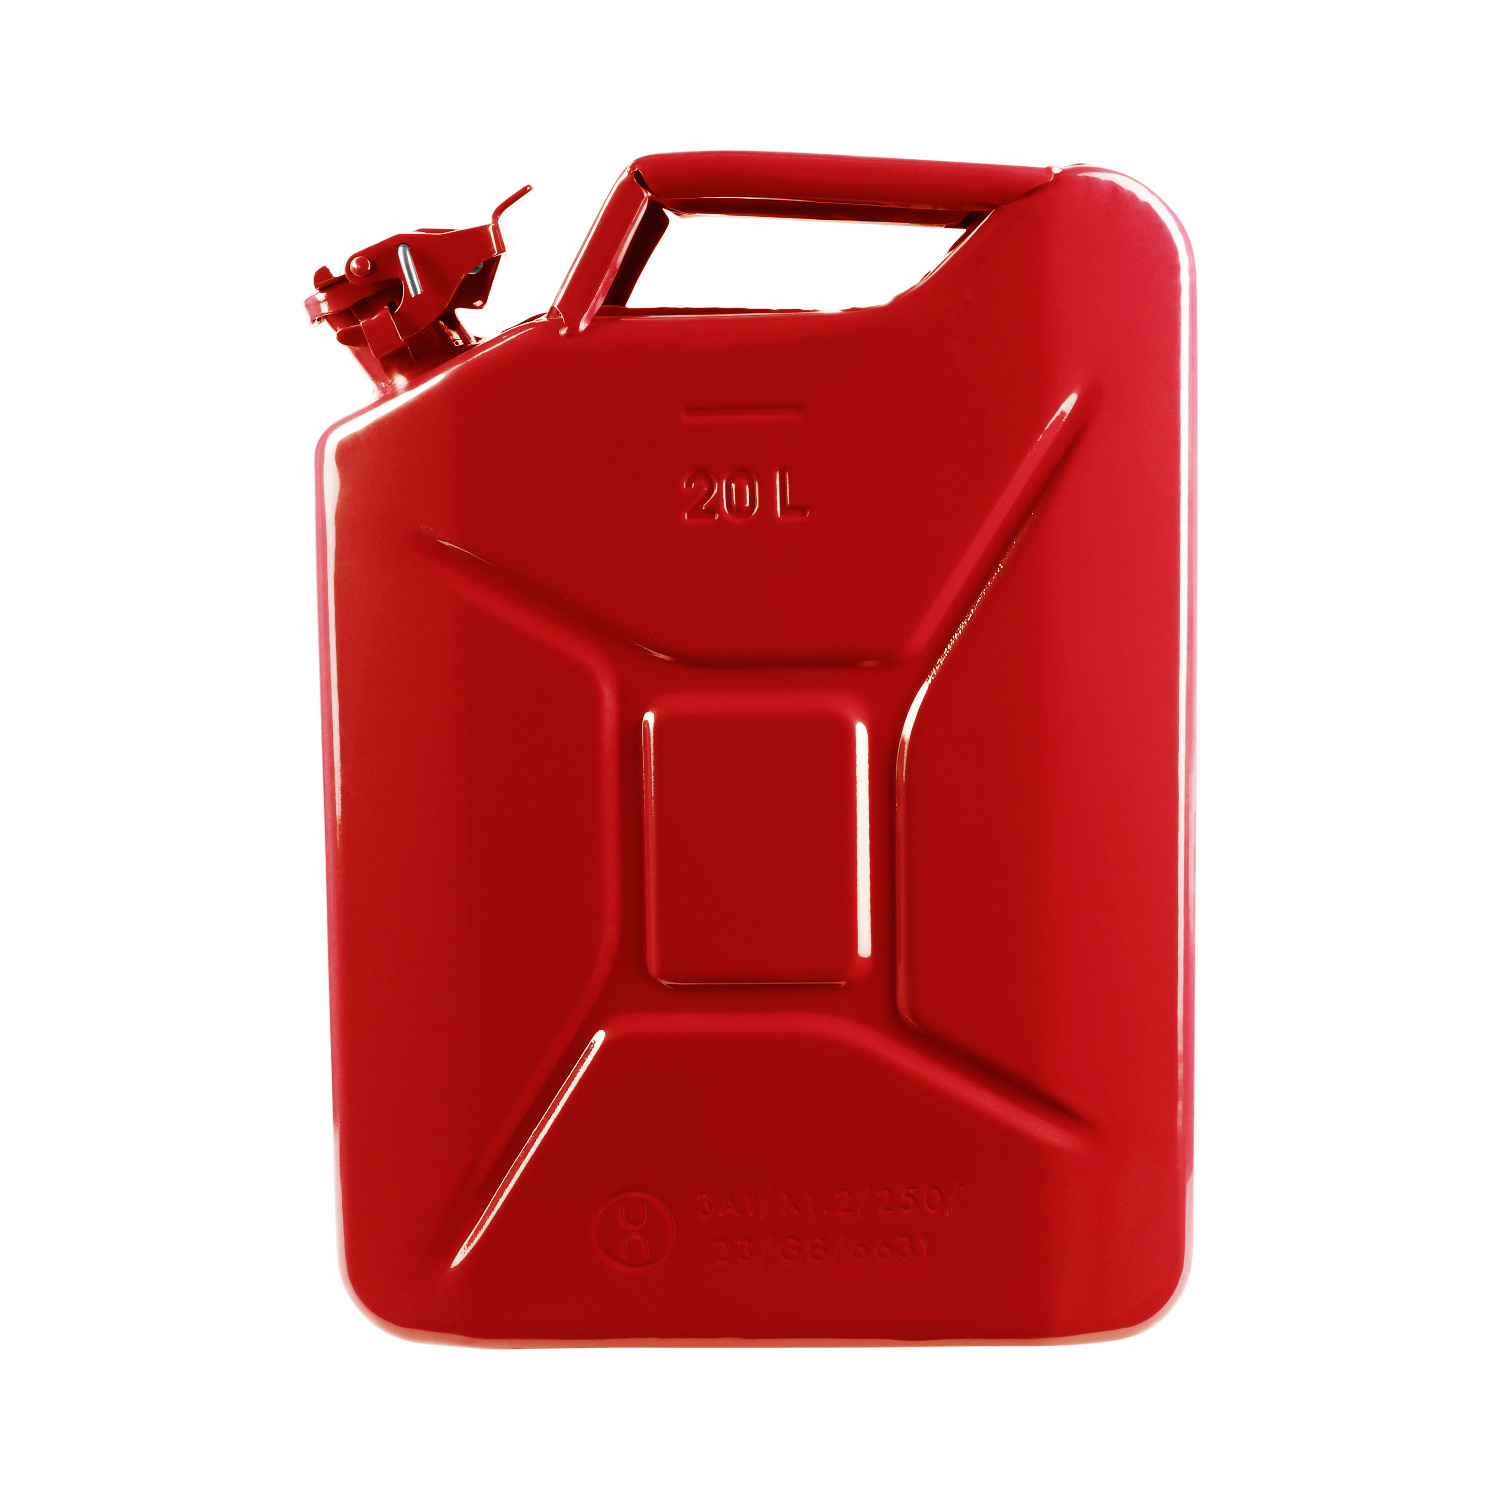 20 Liter Metall Kanister für Benzin & Diesel - Rot